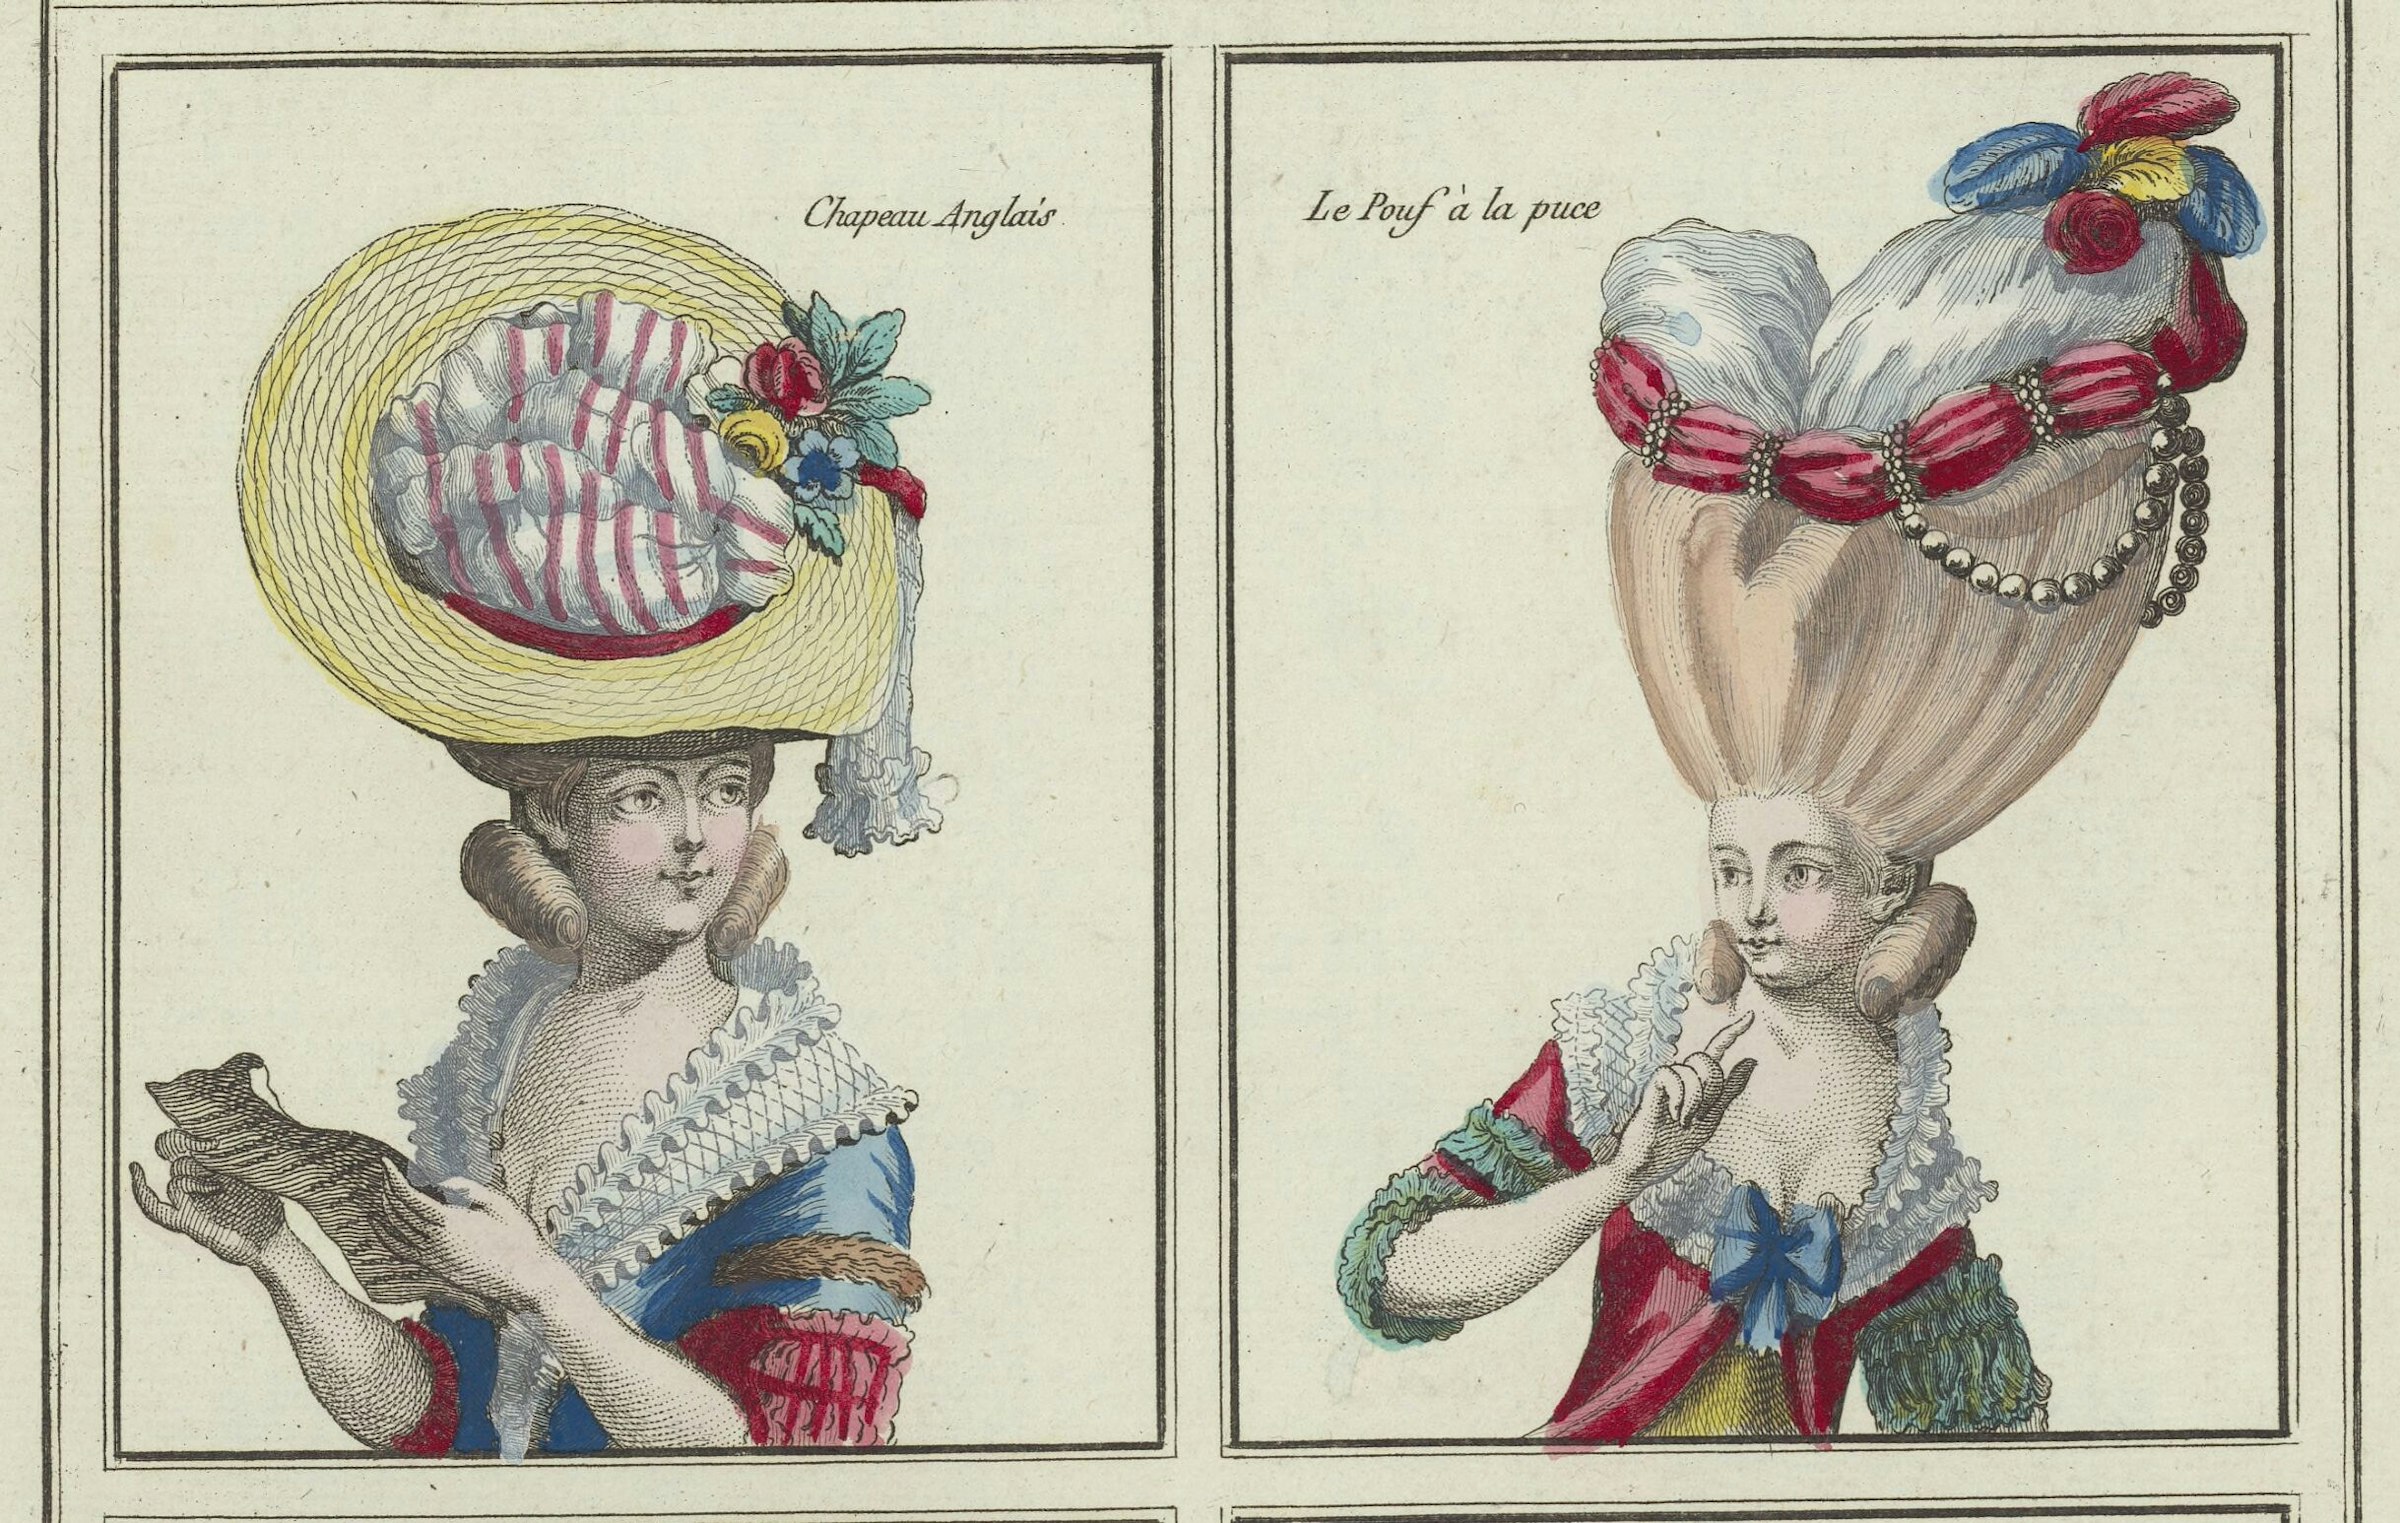 フランス革命直前のファッション・プレート版画。衣服のみならず、髪型と帽子も大きな関心事であった。「イギリス風」帽子とは、麦わら使用のもの（左）。宮廷風の盛り上げたヘアスタイル「プッフ・ア・ラ・ピュス」（右）C. Desrais, P.T. Leclerc et al., 5e Cahier des Costumes Français pour les Coeffures depuis 1776 [gravé par N. Dupin, E. Voysard et al.] 1778-1787.